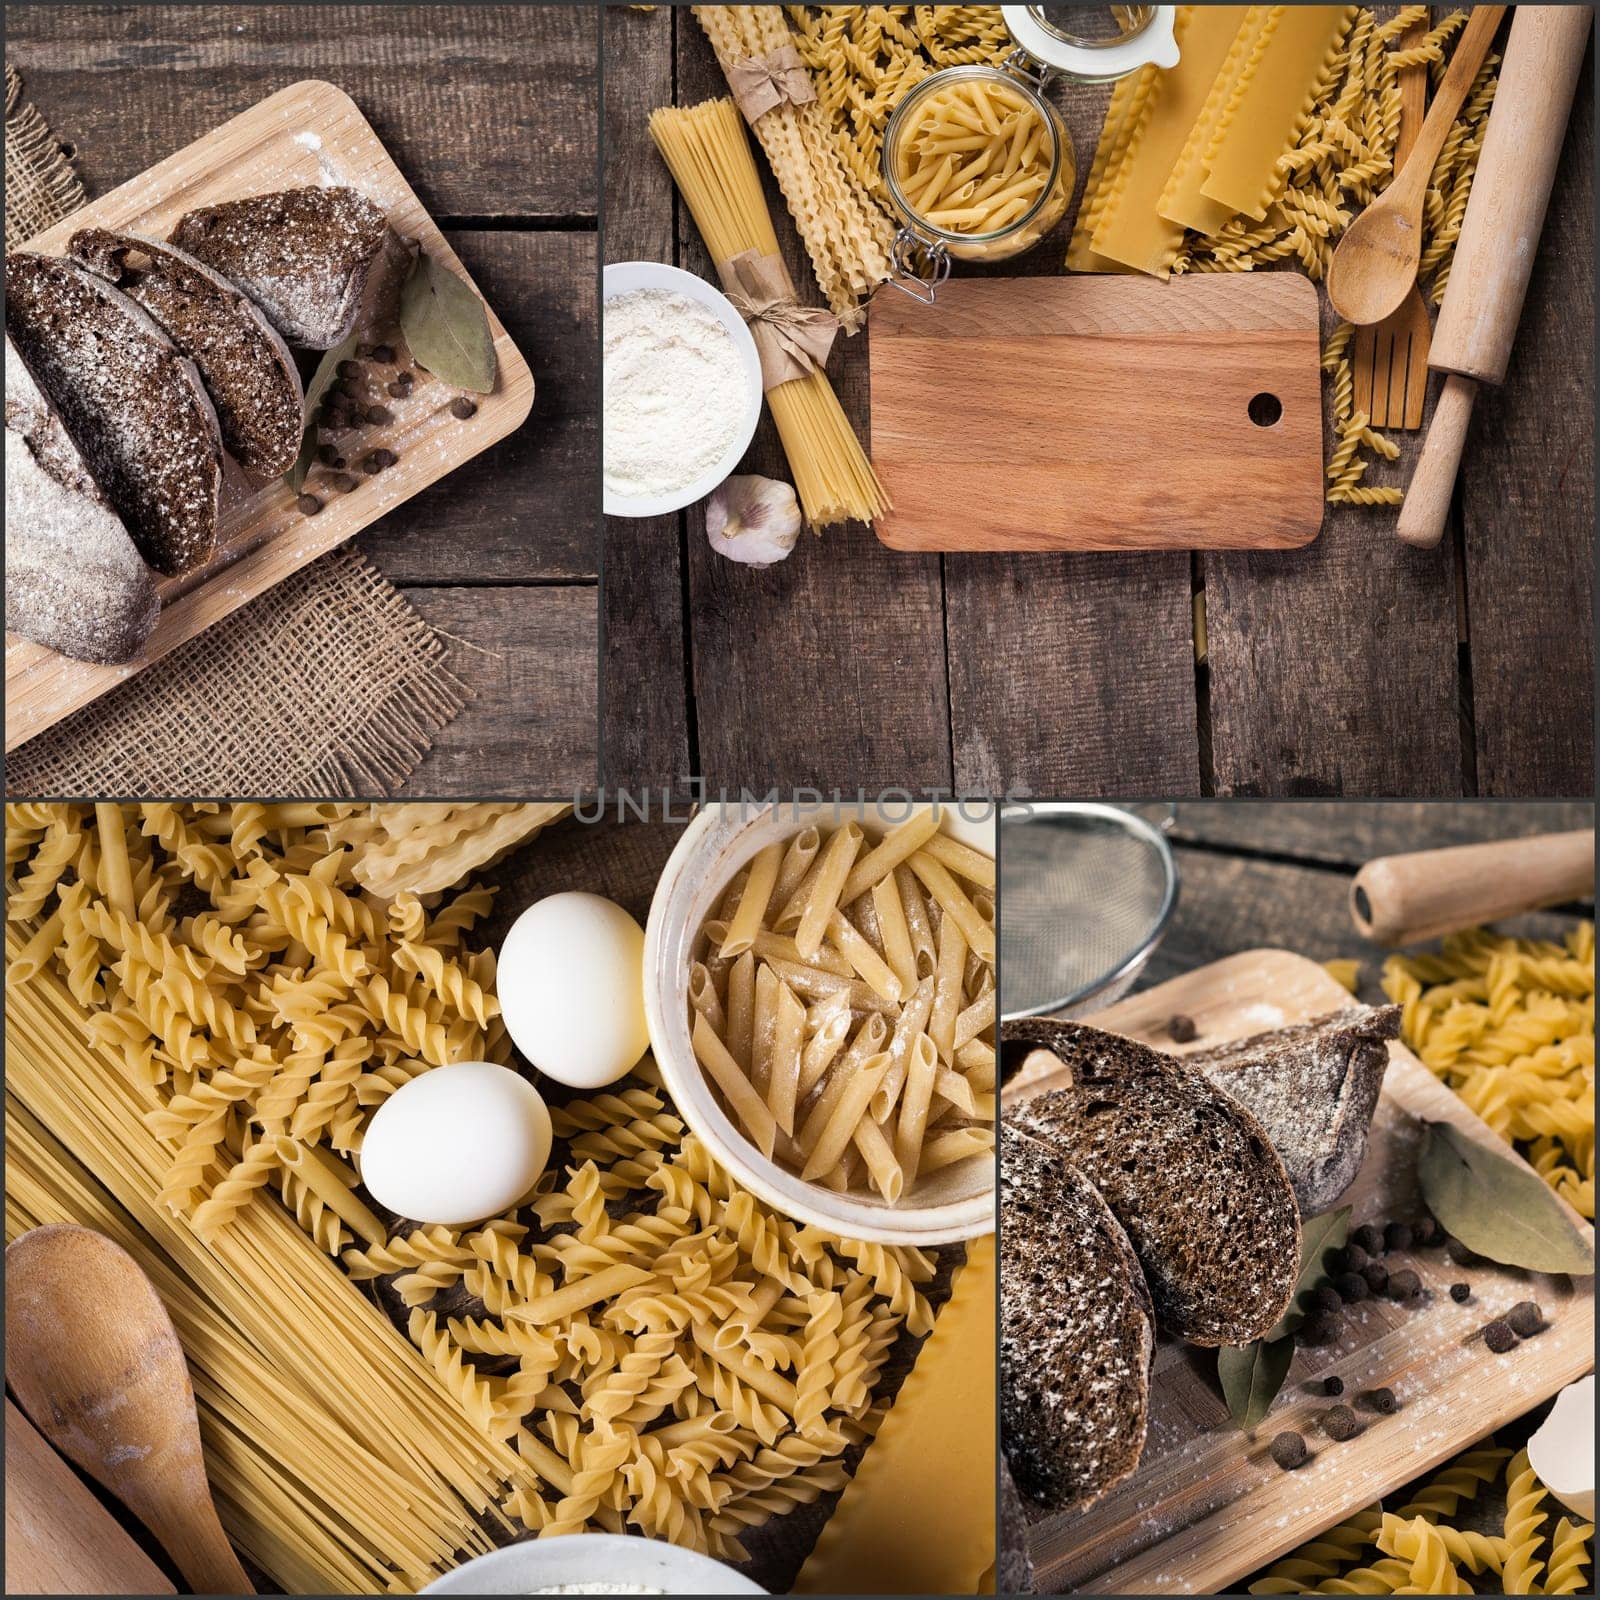 Beautiful pasta collage by Fabrikasimf